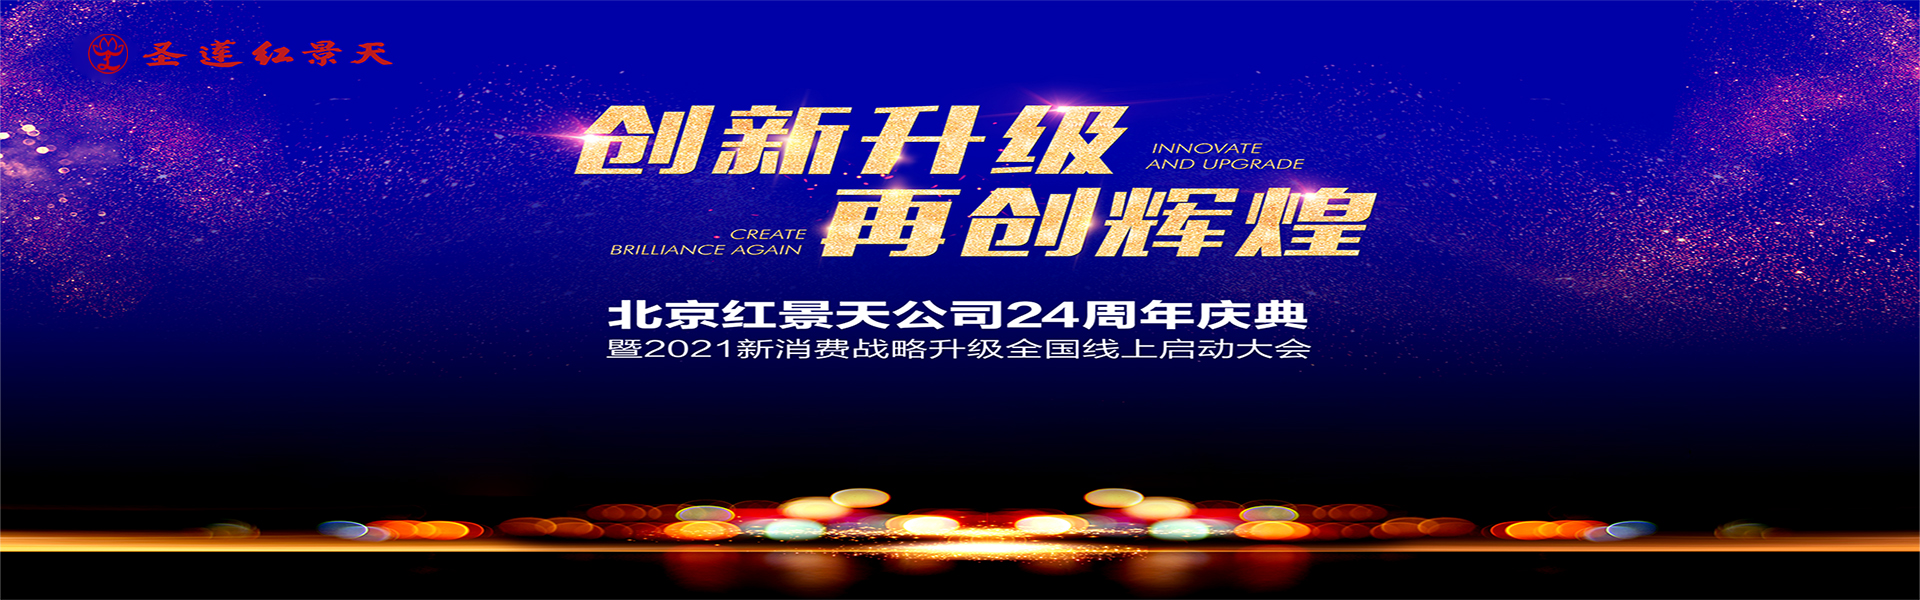 北京红景天公司24周年庆典